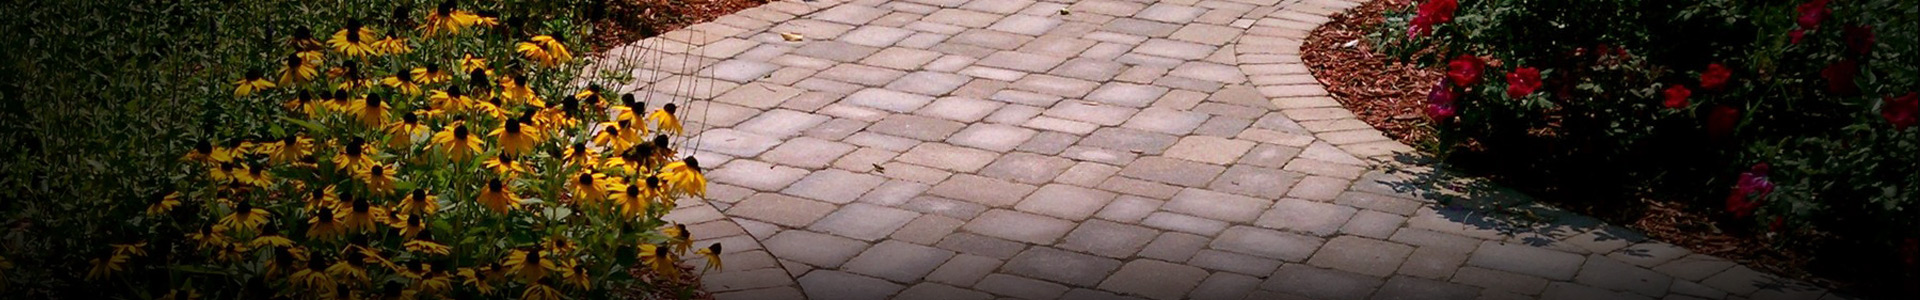 Walkways and patio pave bricks